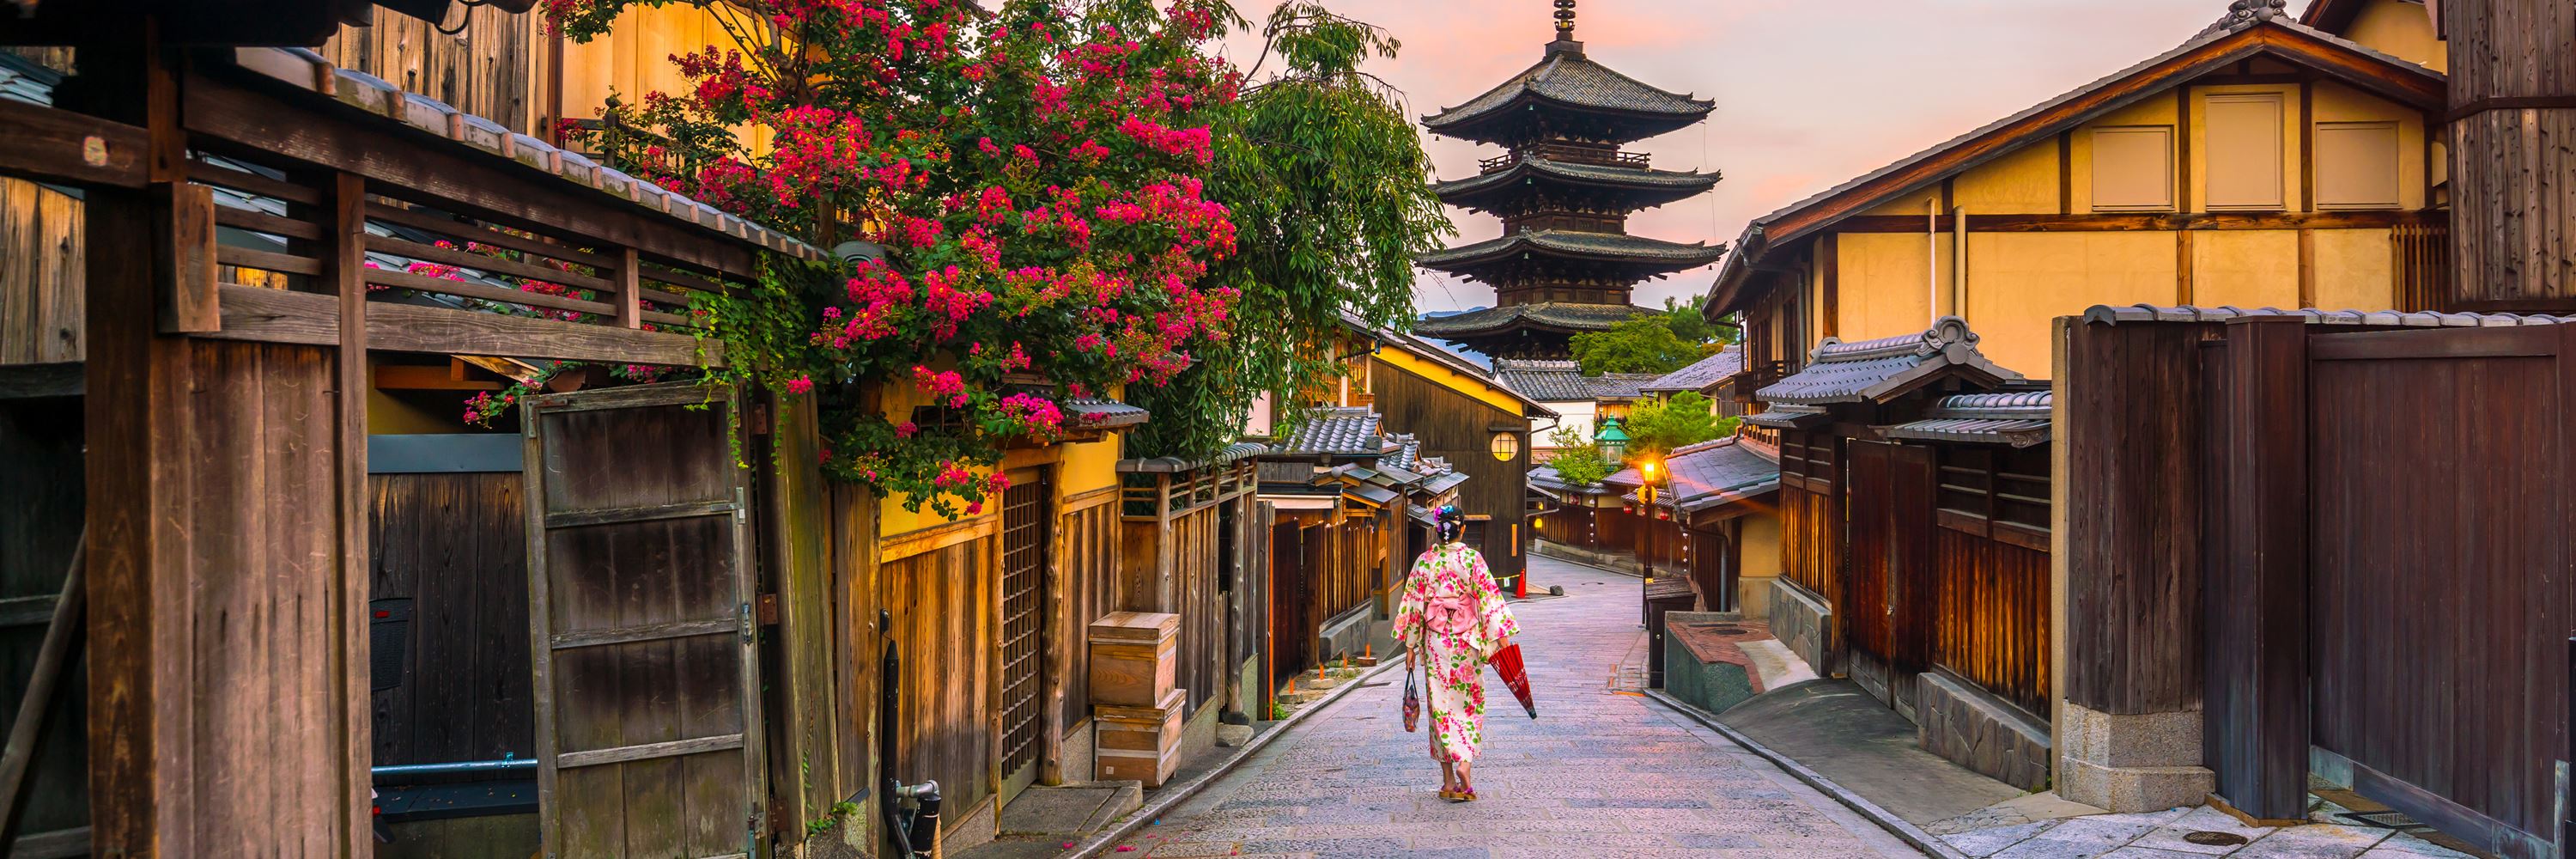 kyoto cuisine walking tour | japan | audley travel